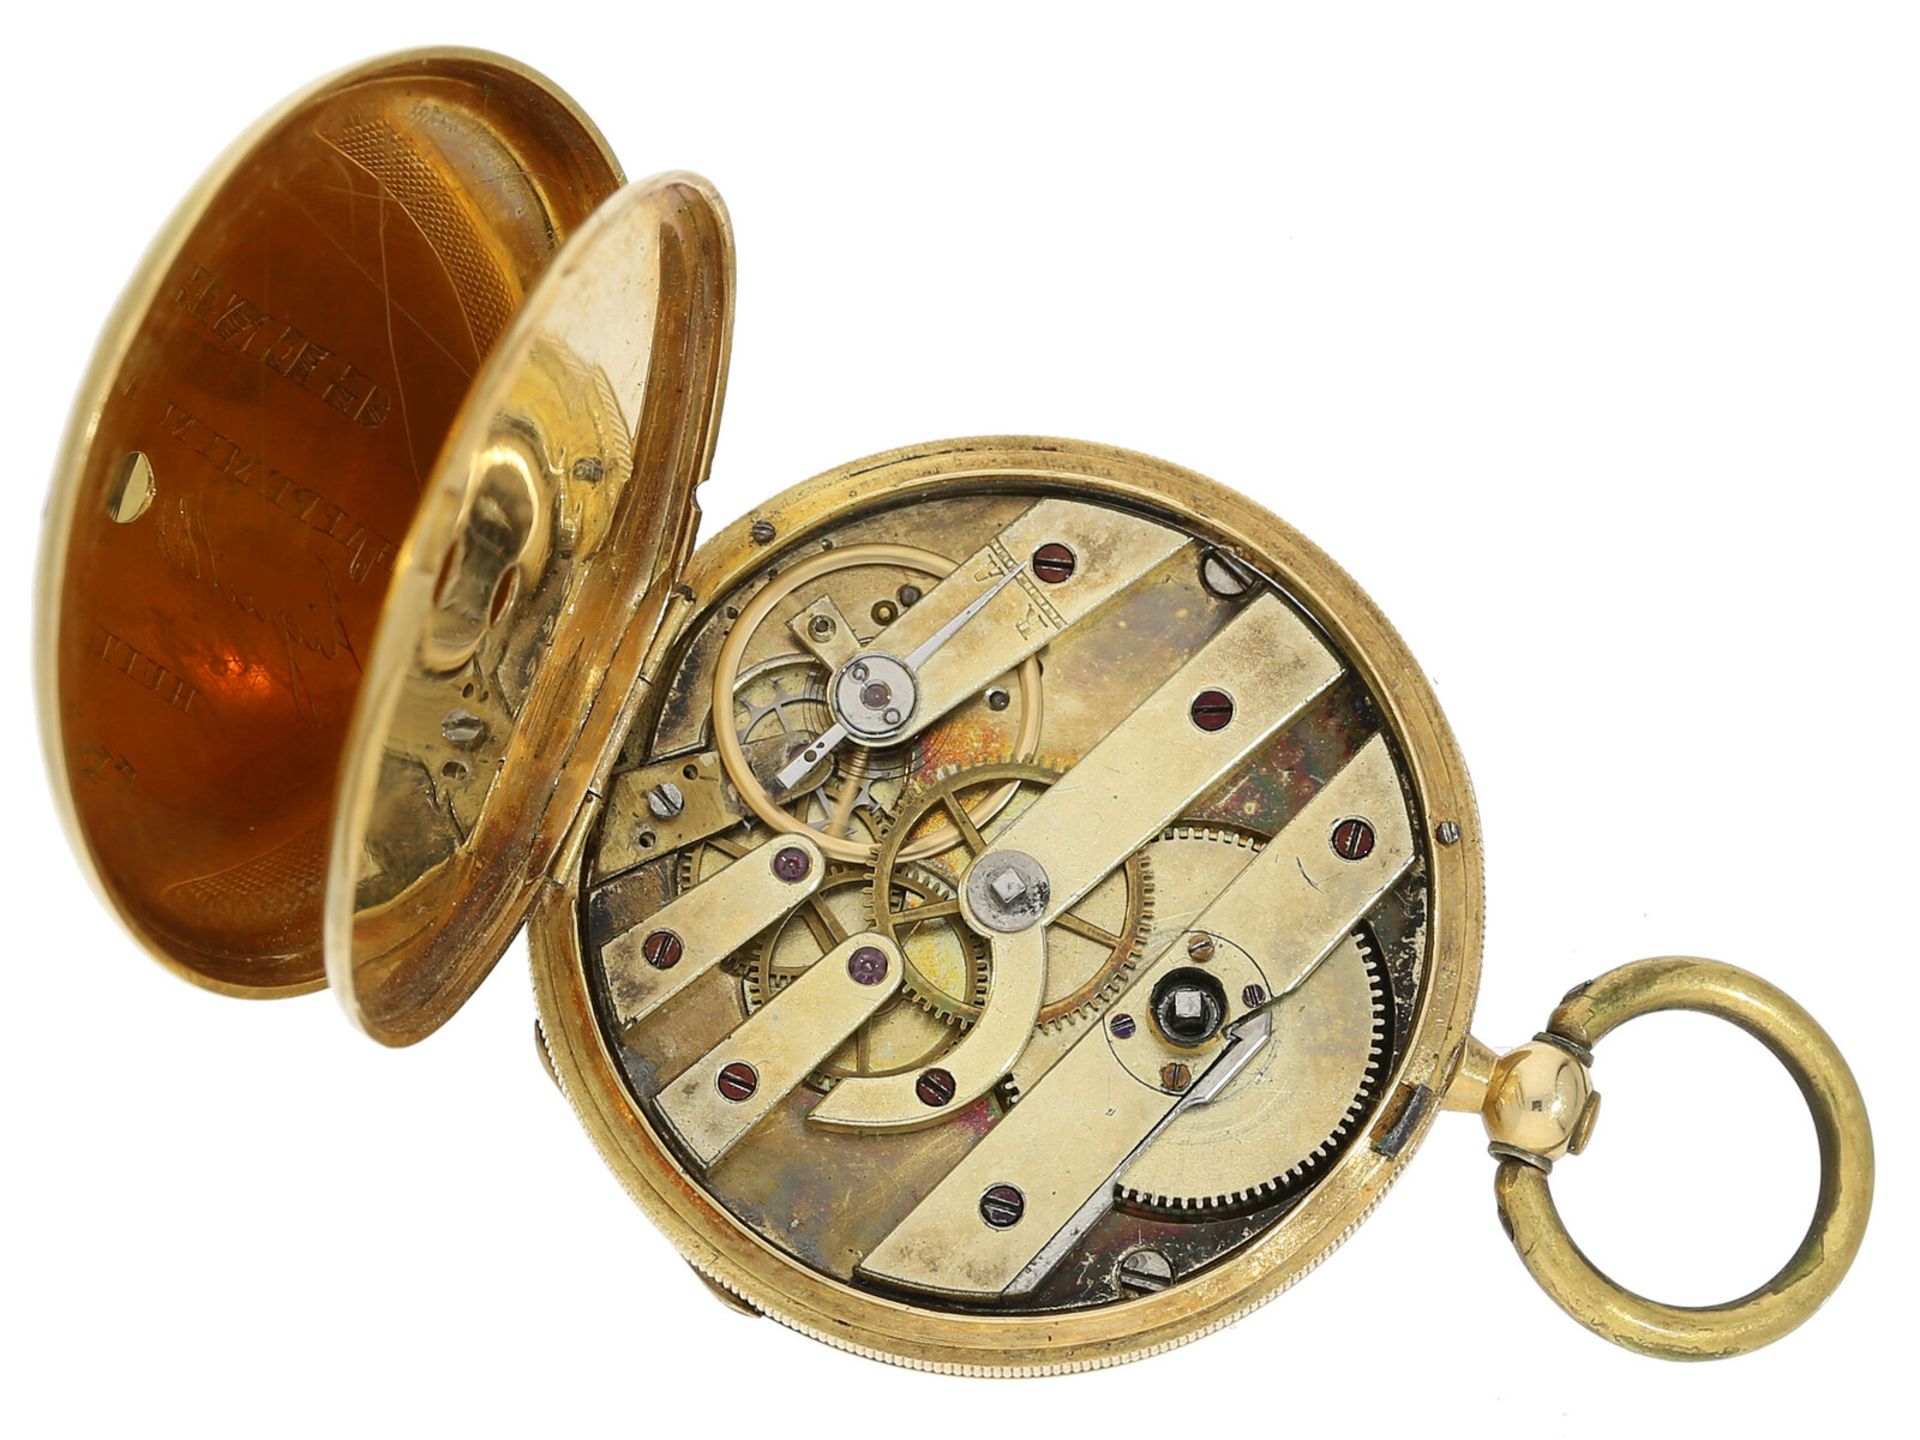 Taschenuhr: Gold/Emaille-Lepine von feiner Qualität, Genf um 1850 - Bild 4 aus 4